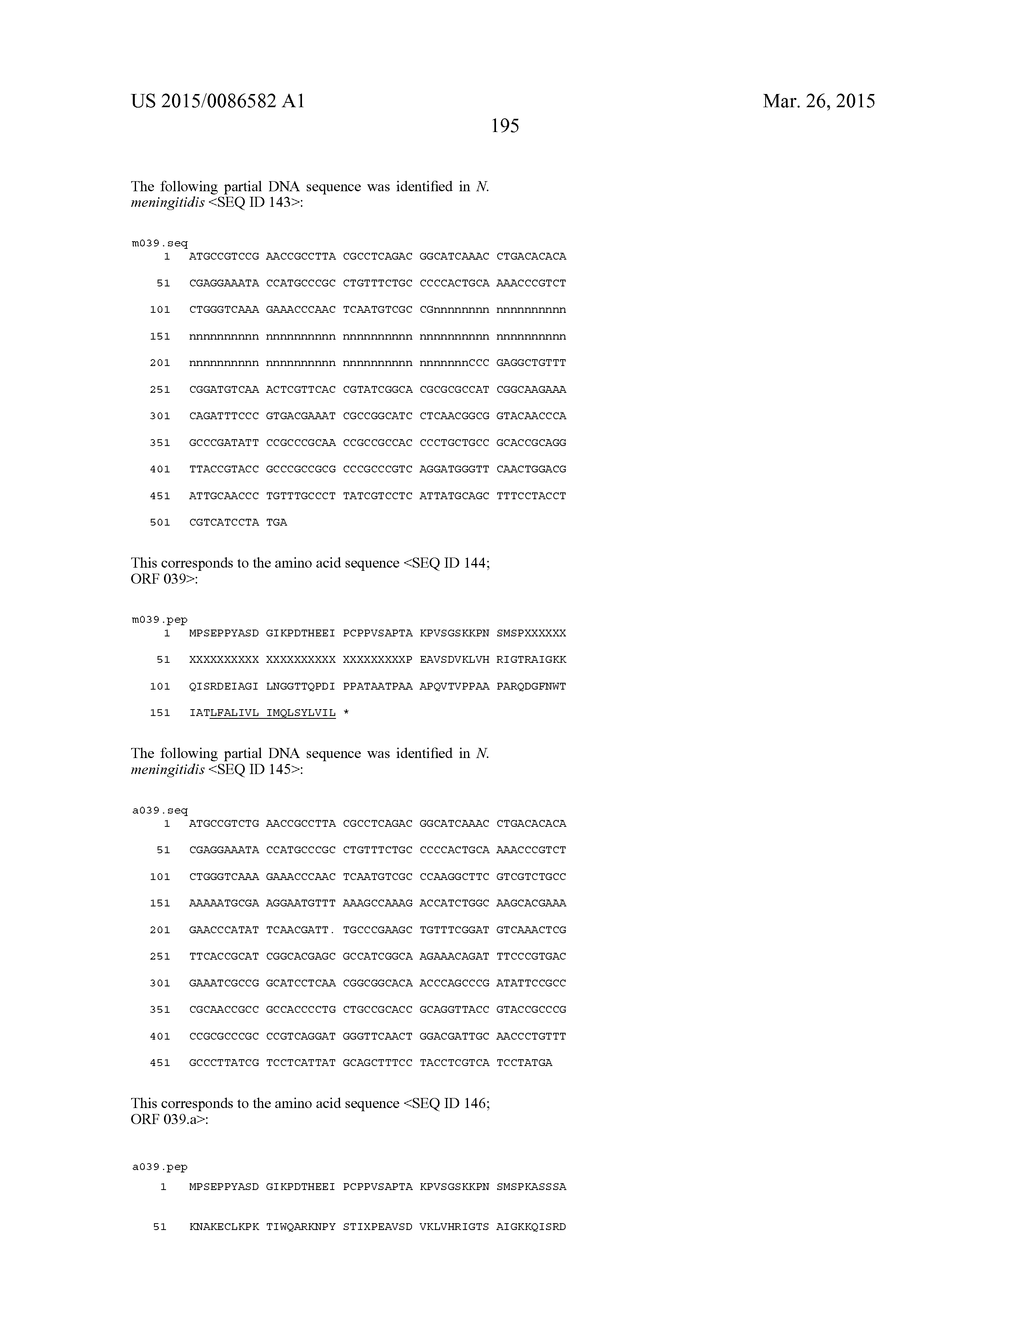 NEISSERIA MENINGITIDIS ANTIGENS AND COMPOSITIONS - diagram, schematic, and image 227